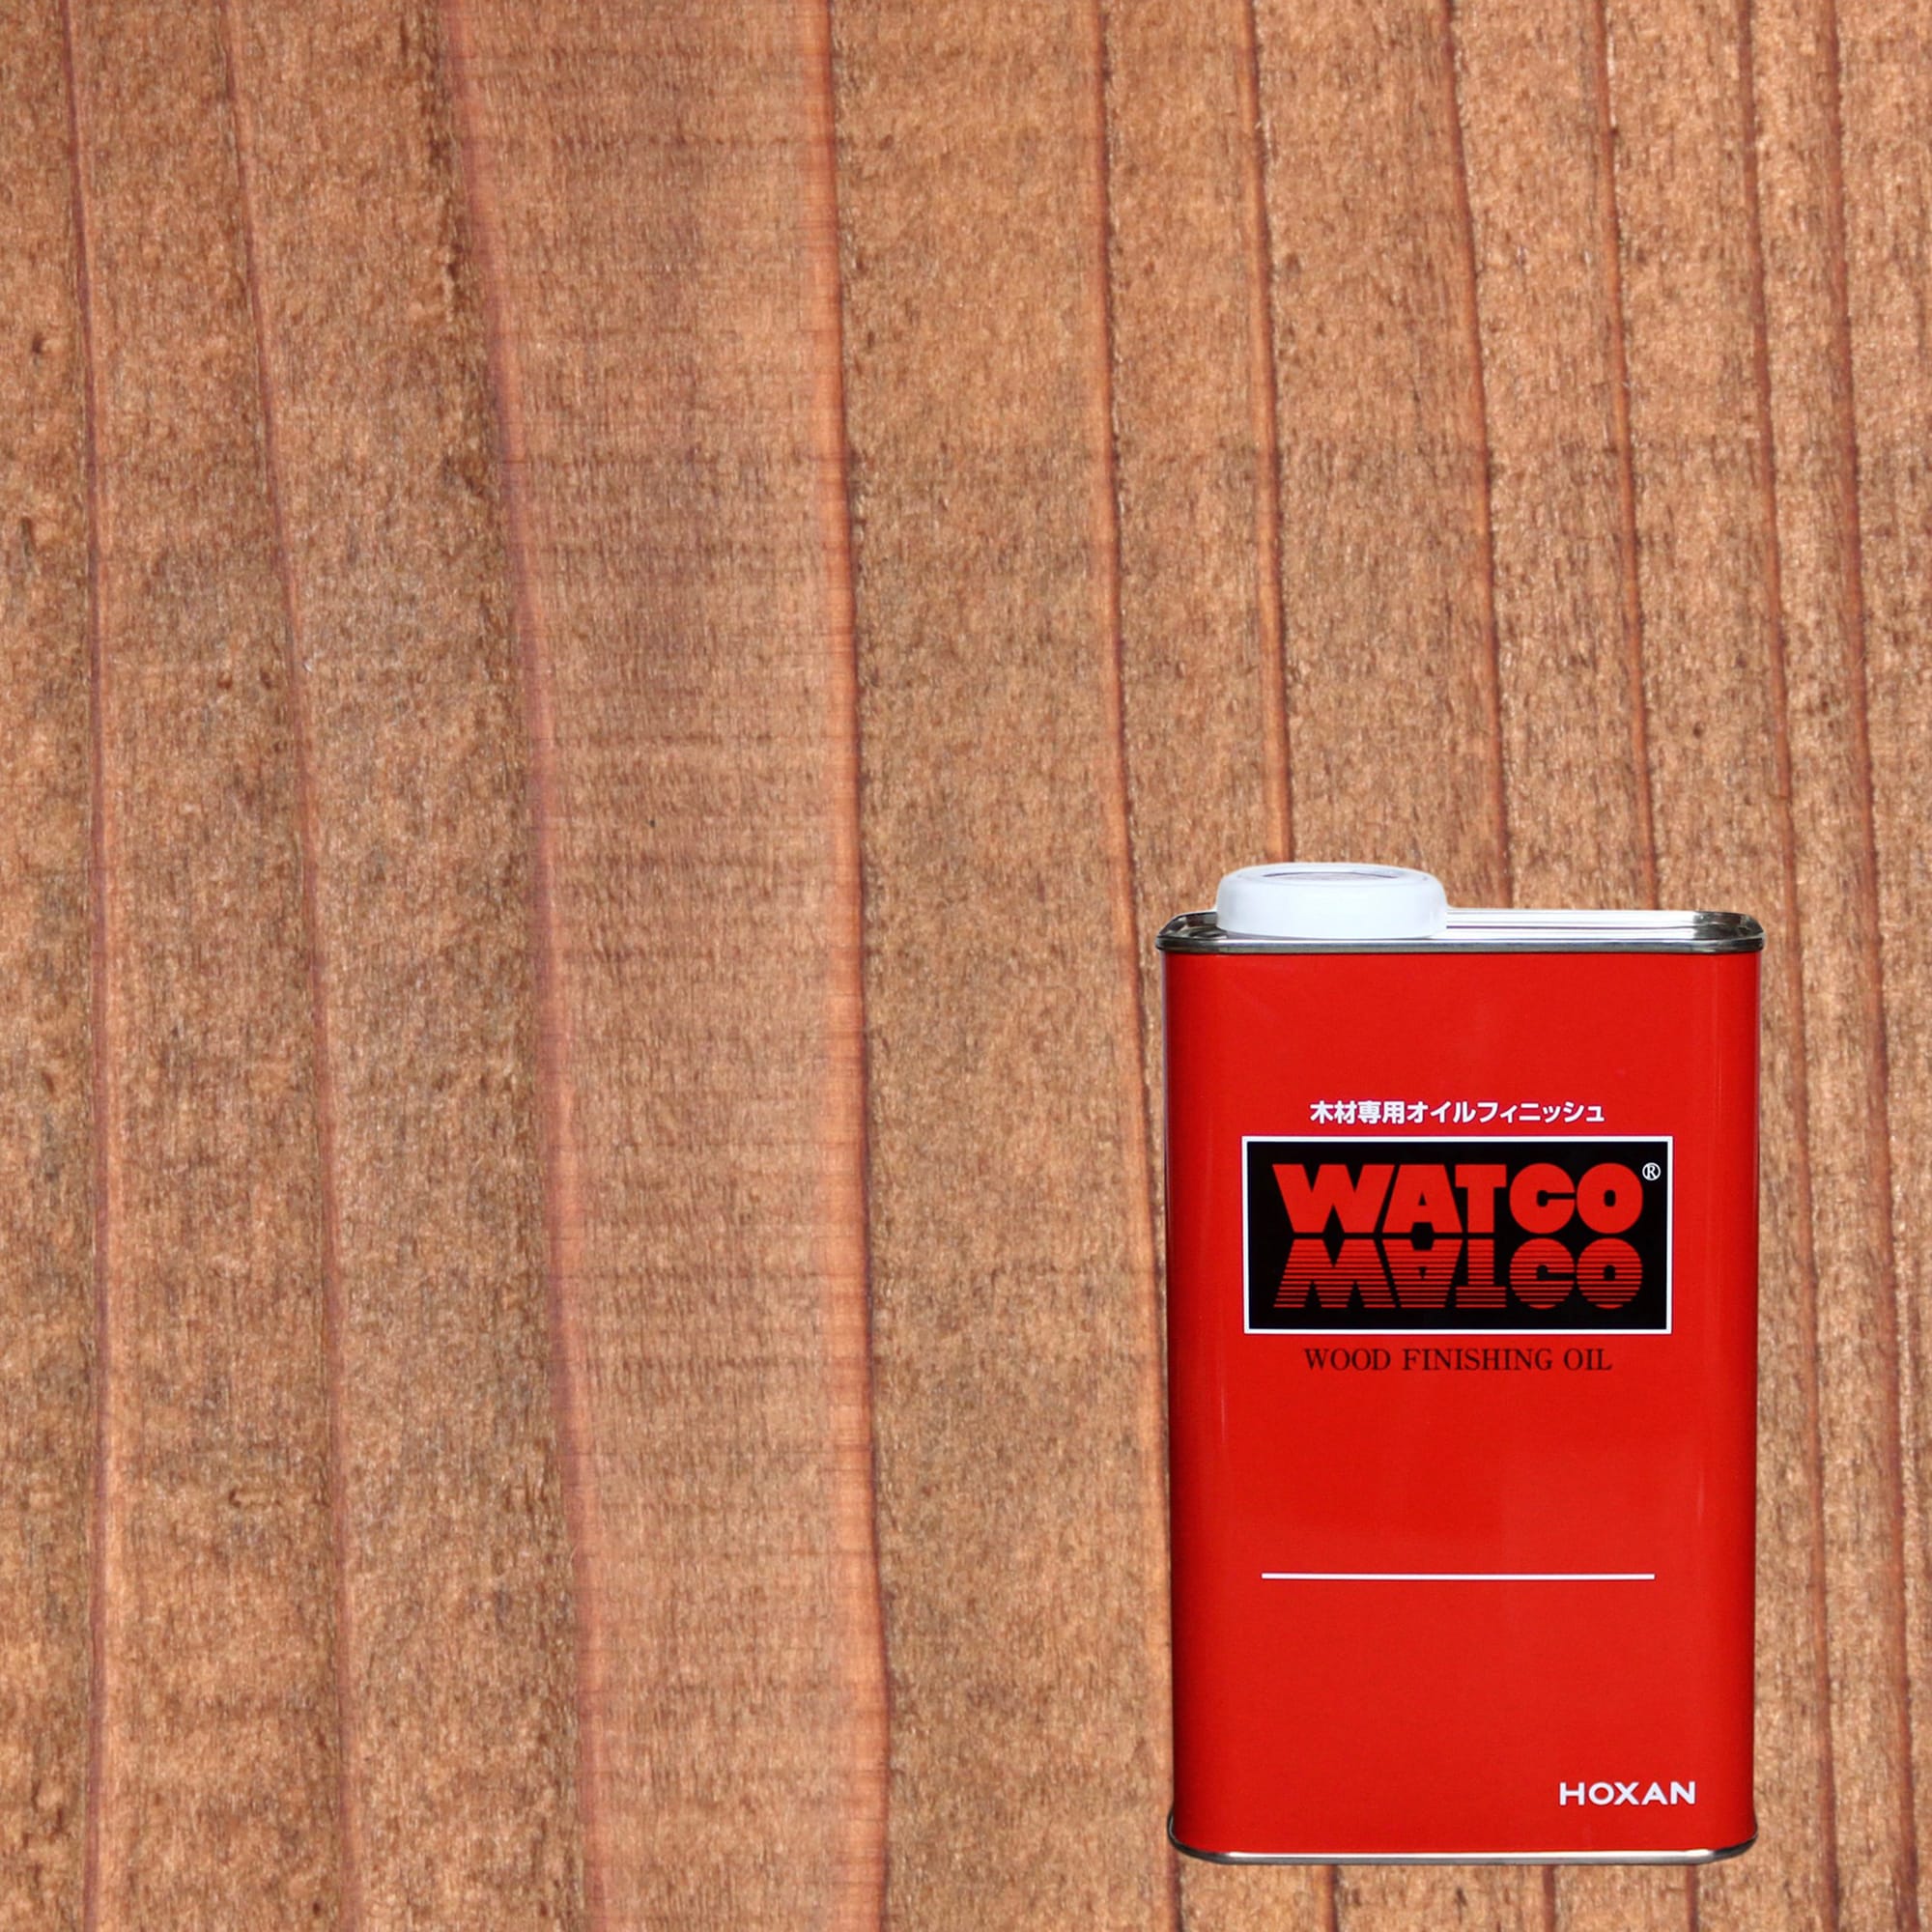 全品最安値に挑戦 タカショー タンモクウッド部材シリーズ 補修用塗料 木製ペイント缶 ライトオーク 3.7リットル缶